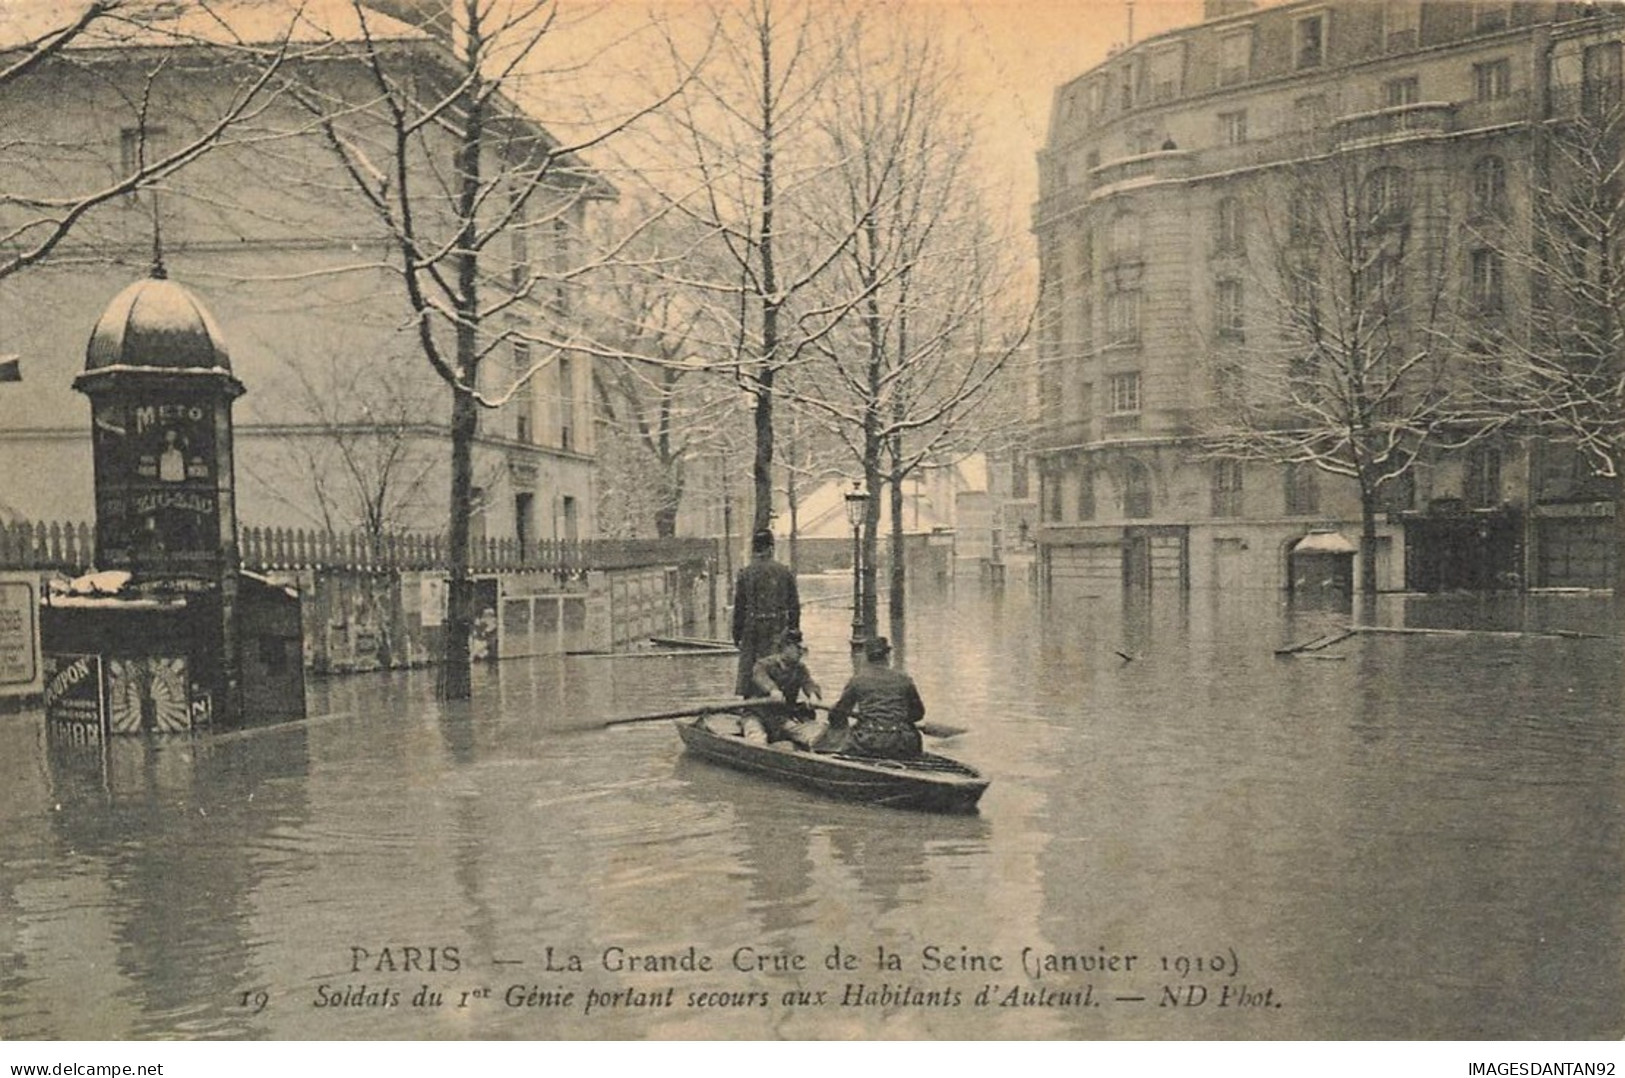 75 PARIS 16 #22933 INONDATIONS CRUE DE LA SEINE 1910 AUTEUIL SOLDATS SU 1ER GENIE PORTANT SECOURS CANOT BARQUE - Paris Flood, 1910